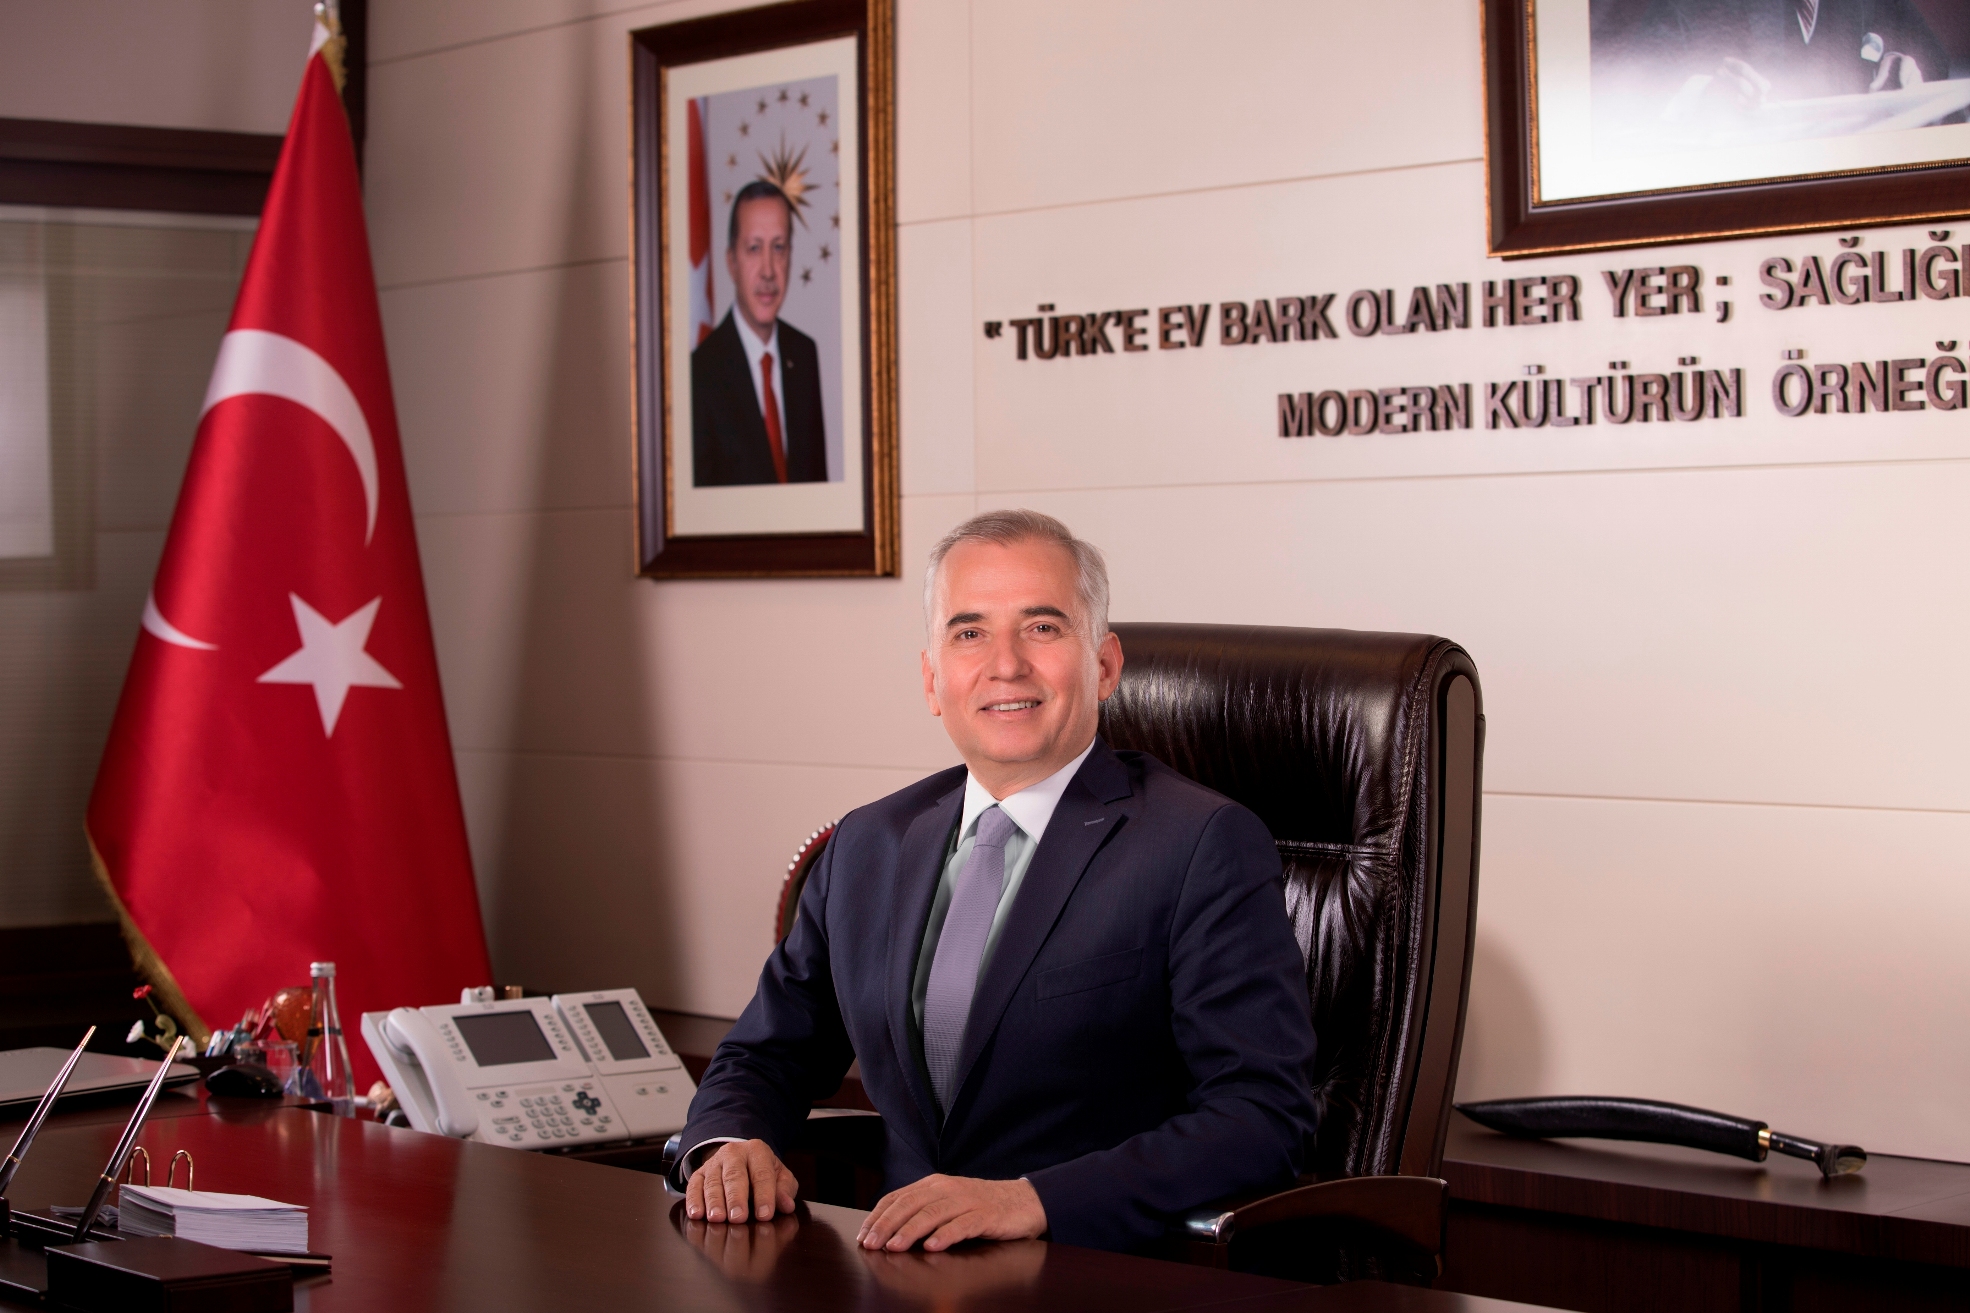 Denizli Buyuksehir Belediye Baskani Osman Zolan 2 - Başkan Osman Zolan’dan 19 Mayıs mesajı